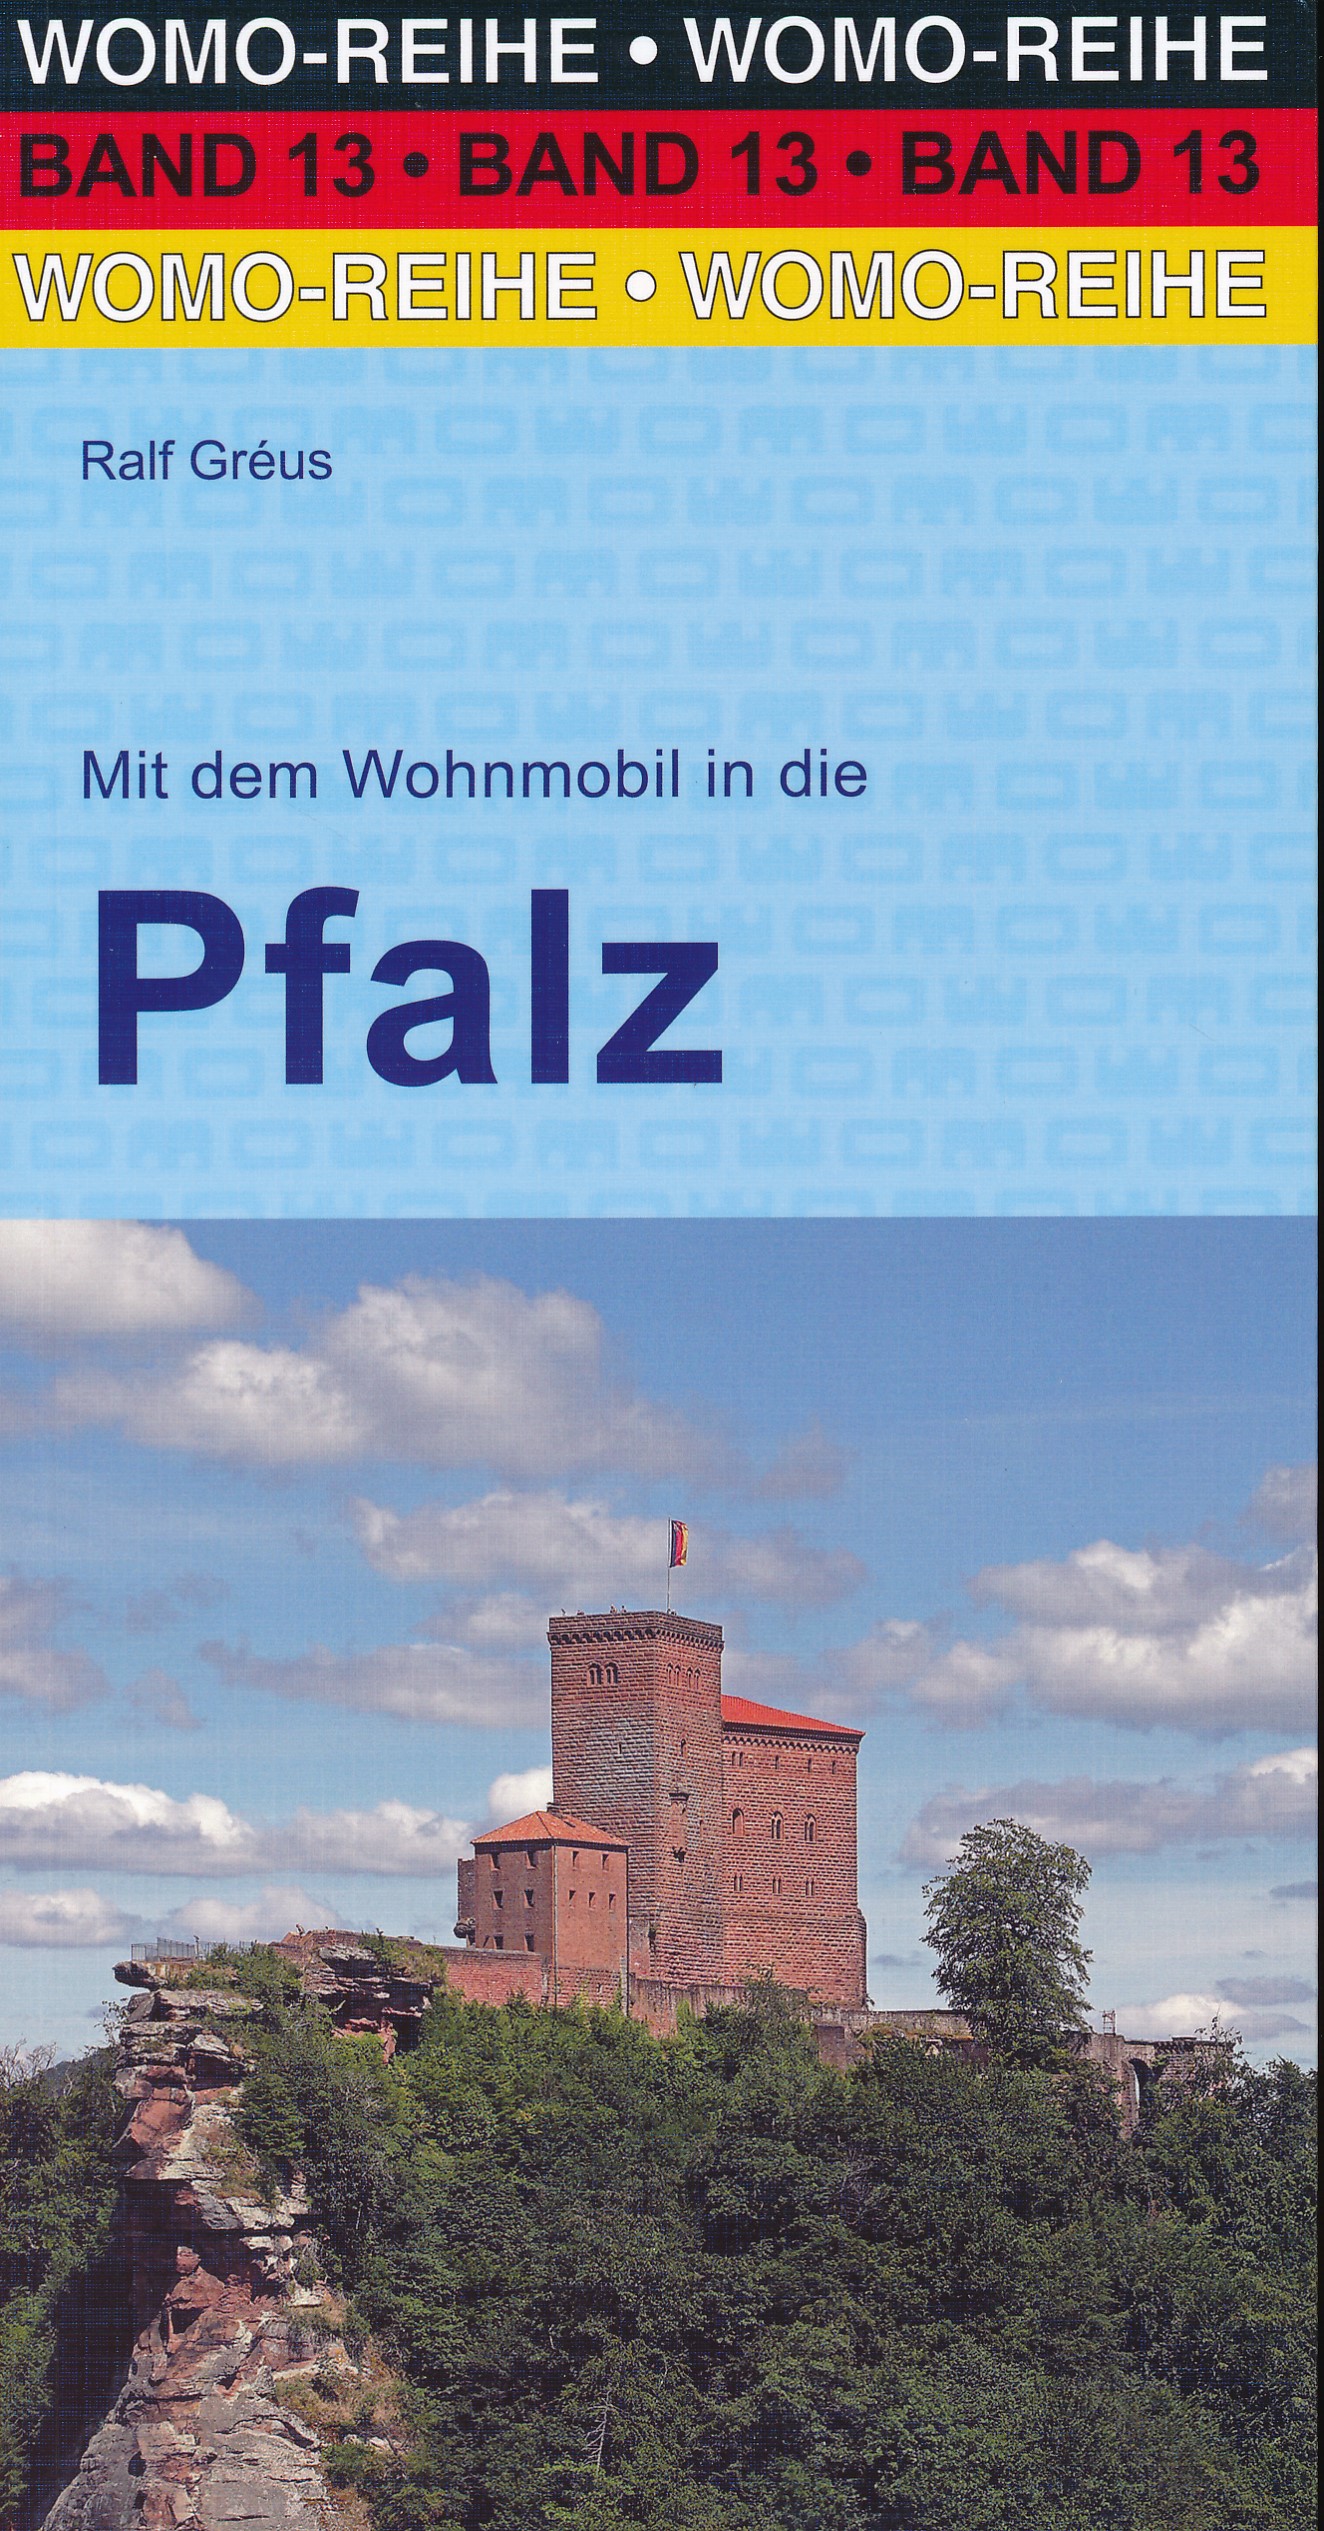 Online bestellen: Campergids 13 Mit dem Wohnmobil durch die Pfalz | WOMO verlag